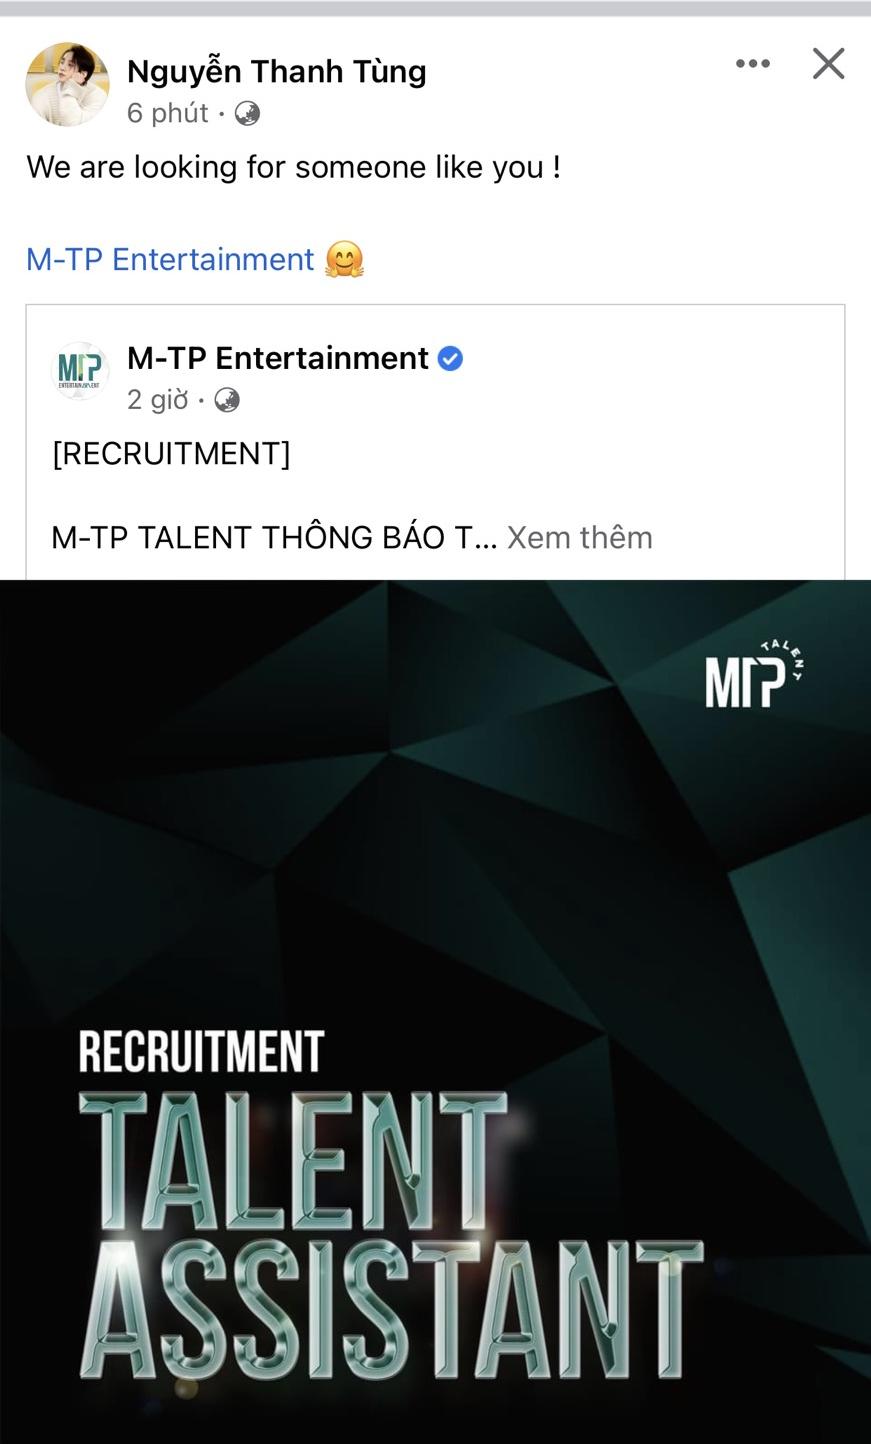 Mới đây, Chủ tịch của M-TP Entertainment đã đích thân chia sẻ bài viết tuyển nhân sự